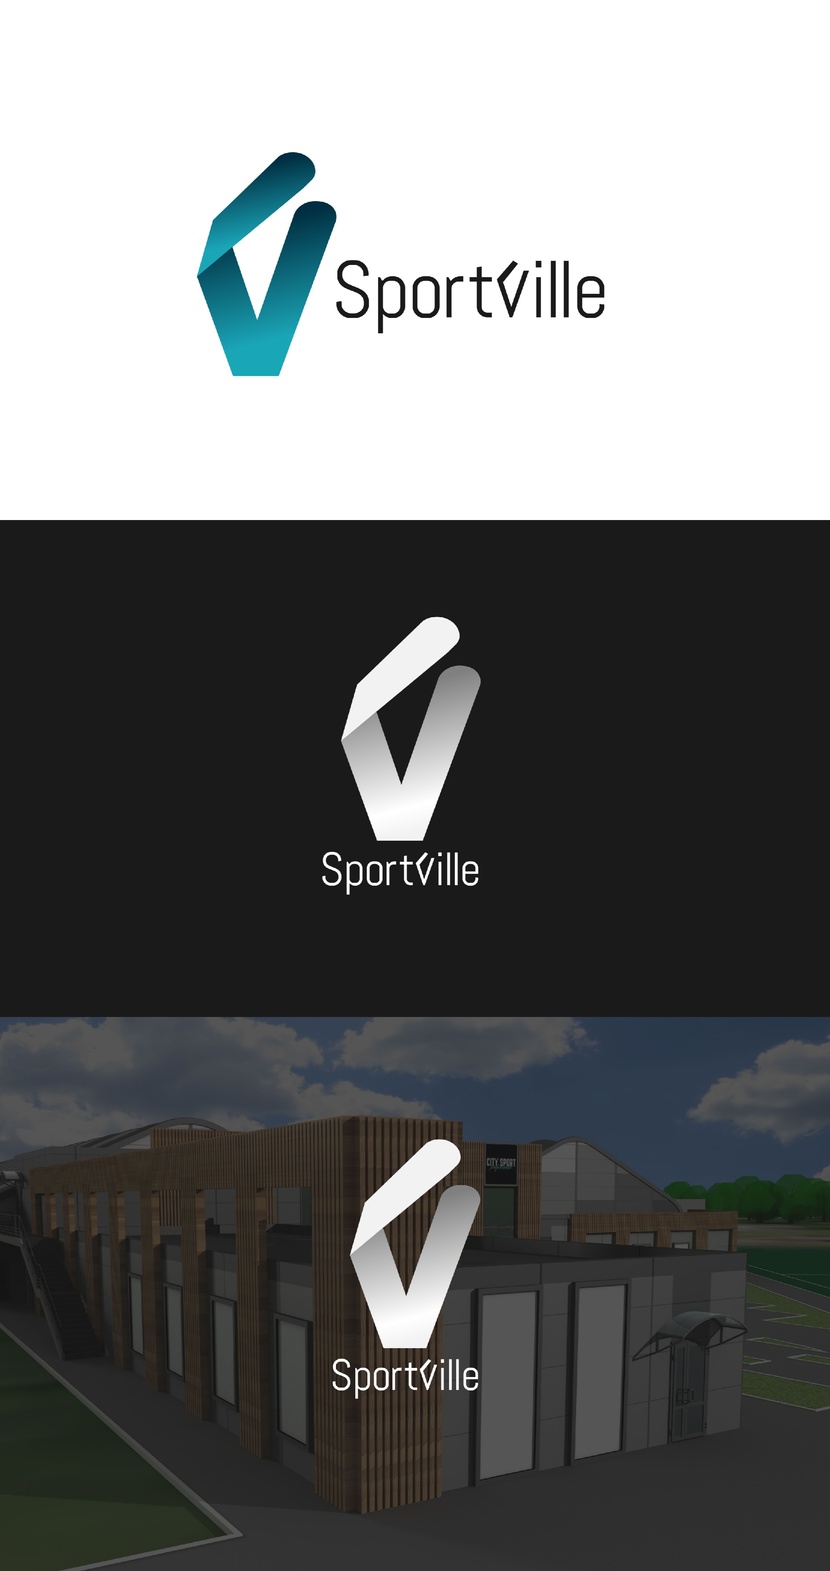 1 - Создание логотипа спортивного комплекса SportVille